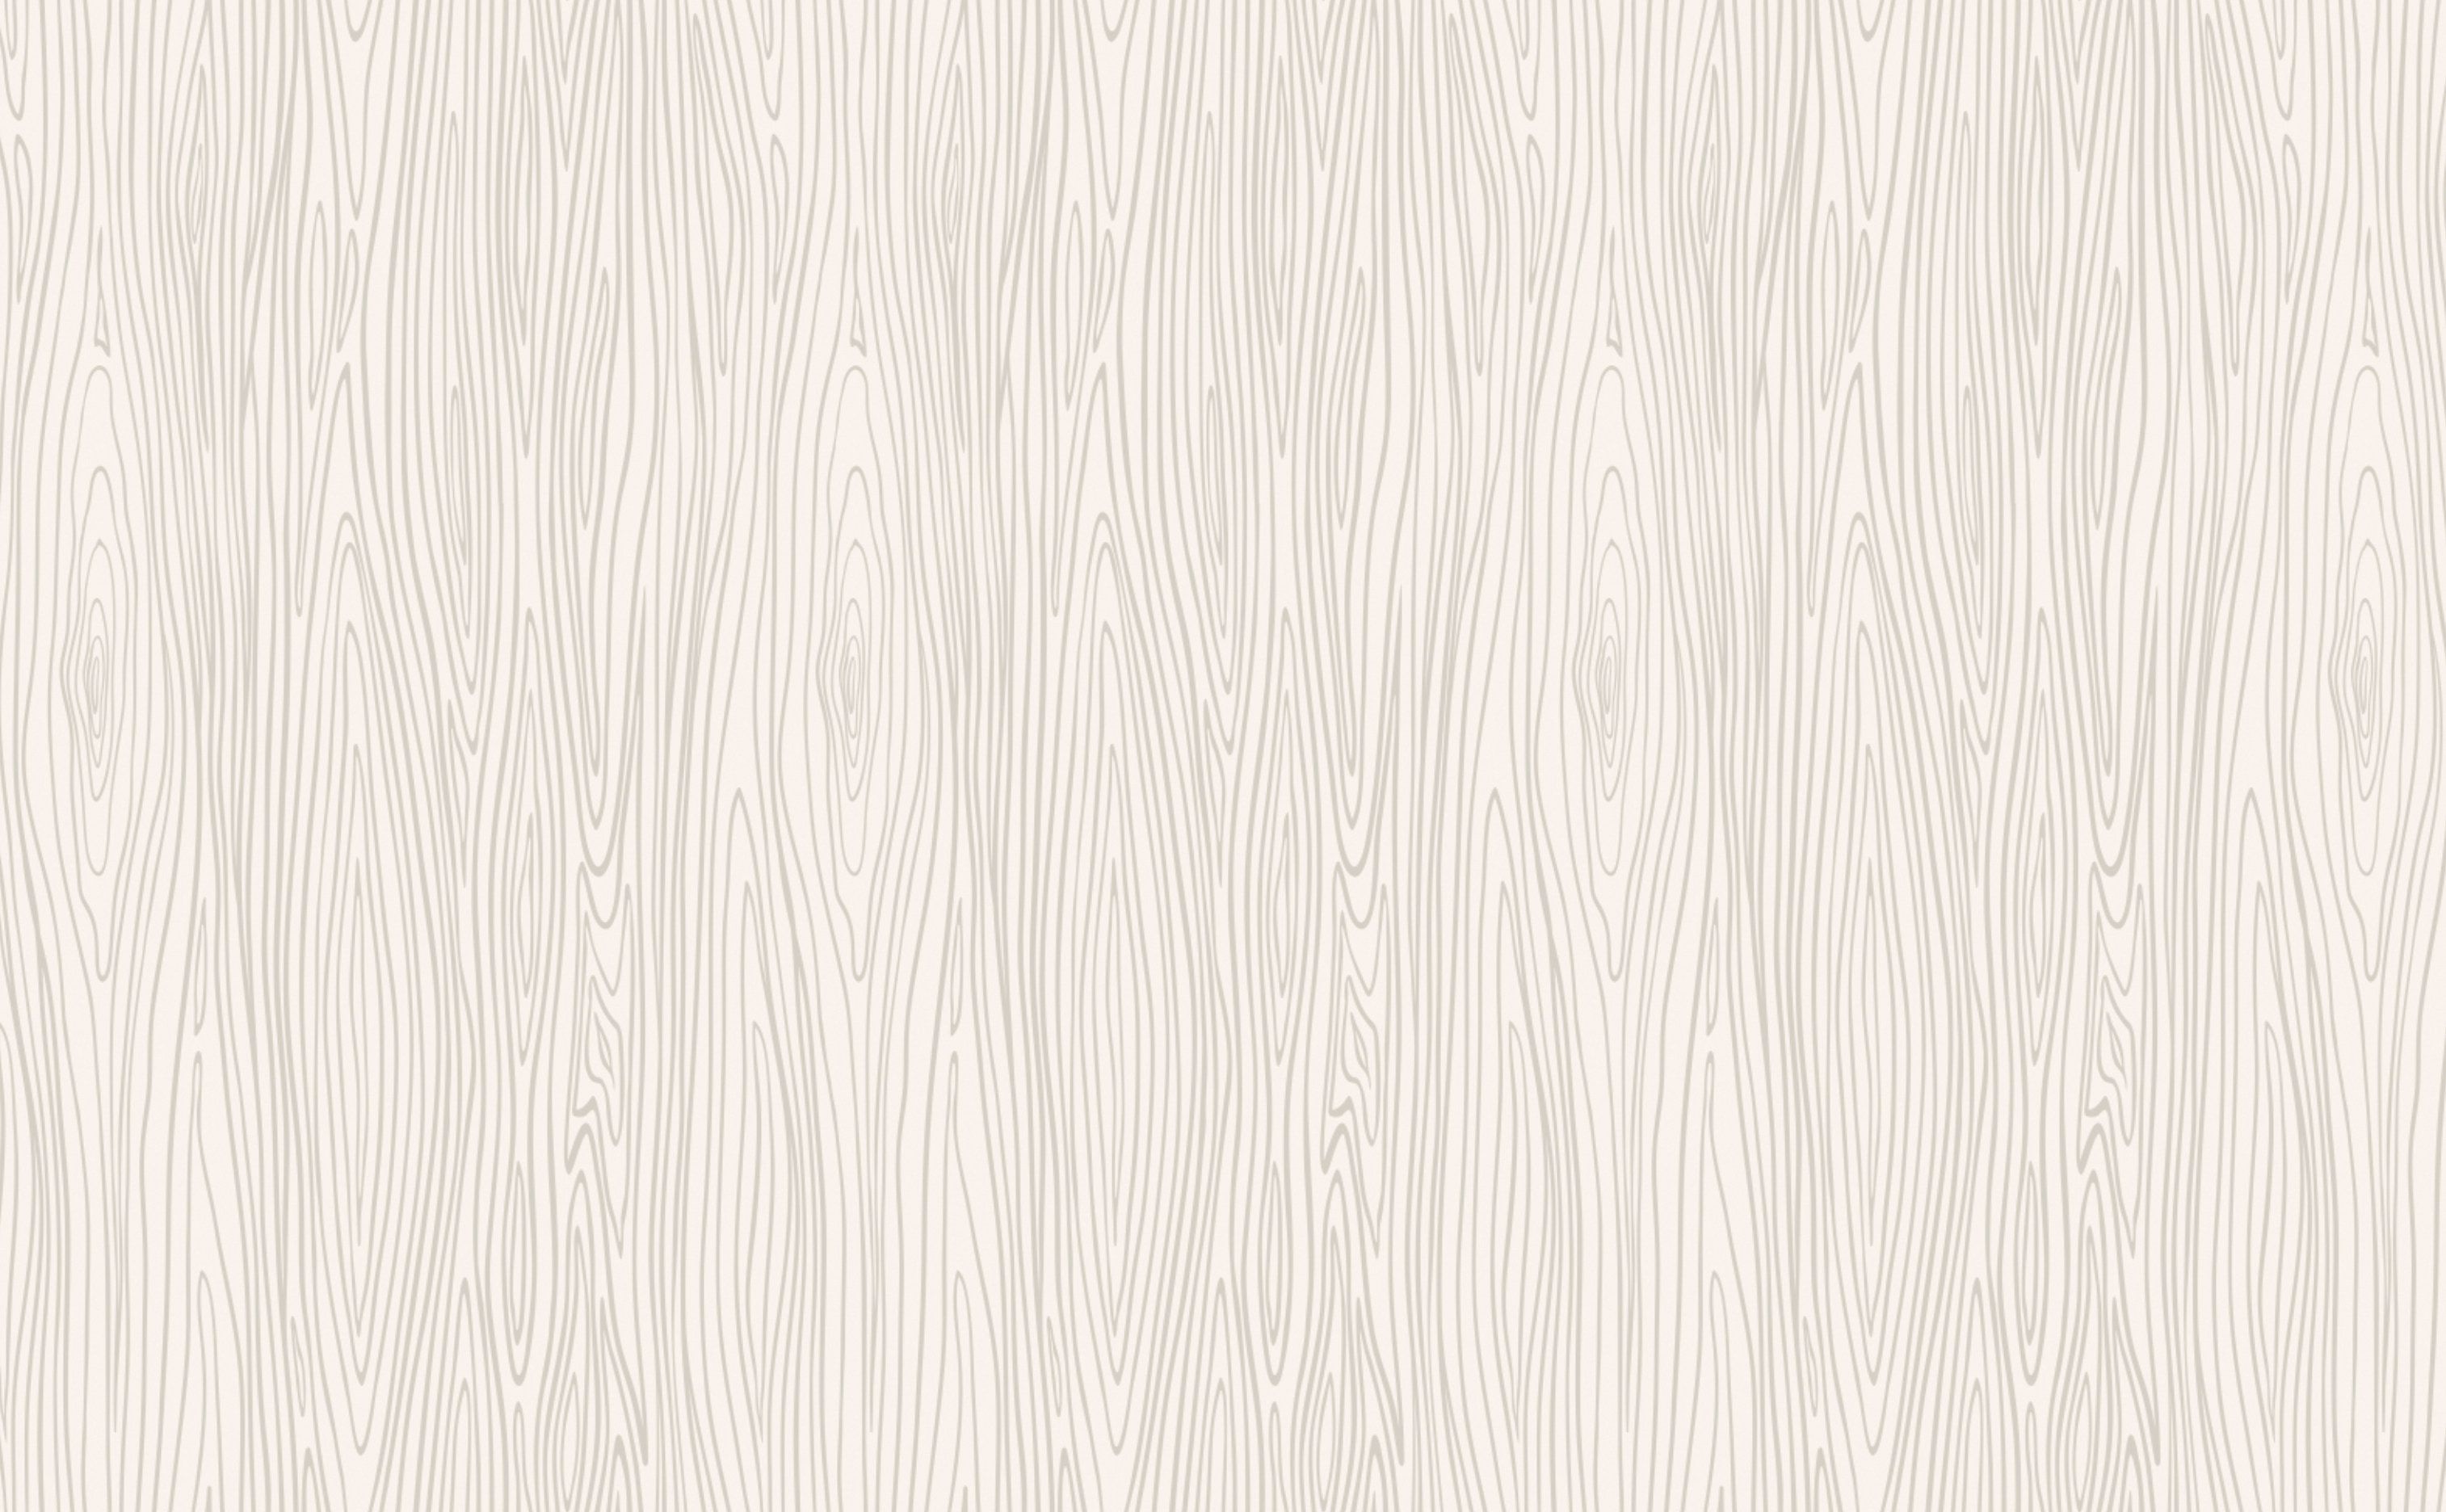 دانلود تصویر تکسچر  چوب سفید با بافت لکه های طبیعی چوب 